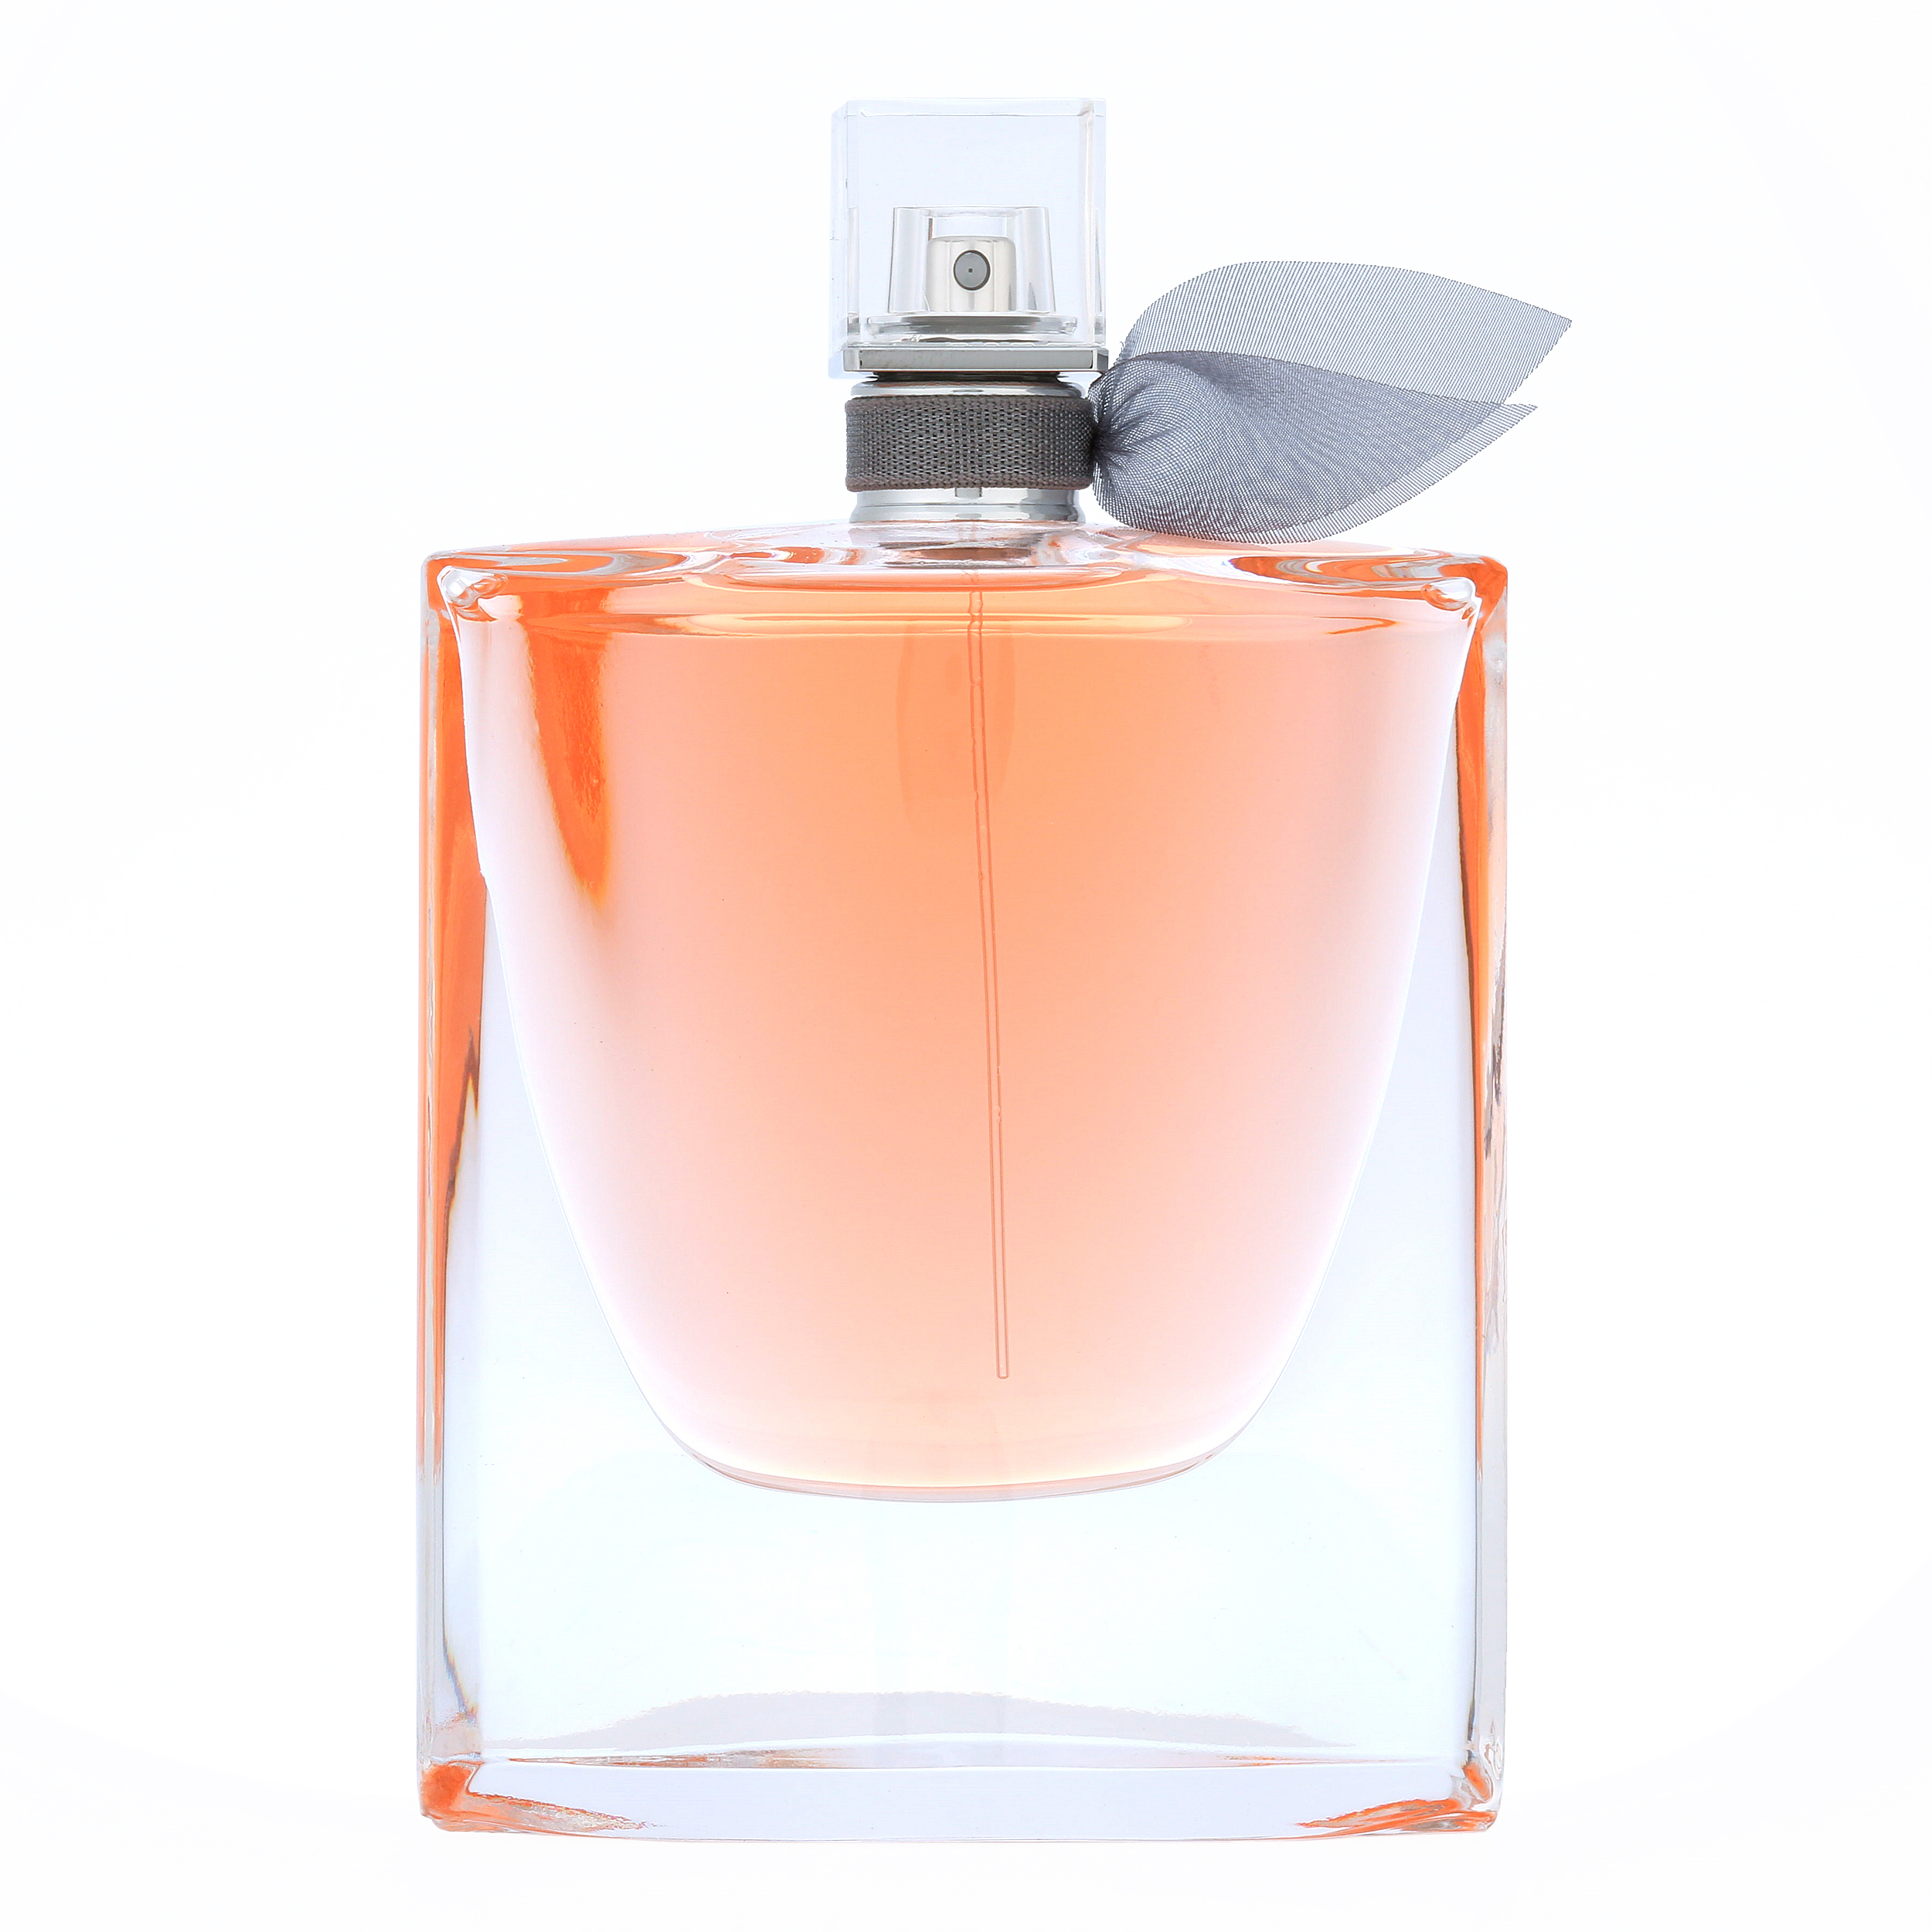 Lancome La Vie Est Belle Eau de Parfum, Perfume for Women, 3.4 oz - image 1 of 5